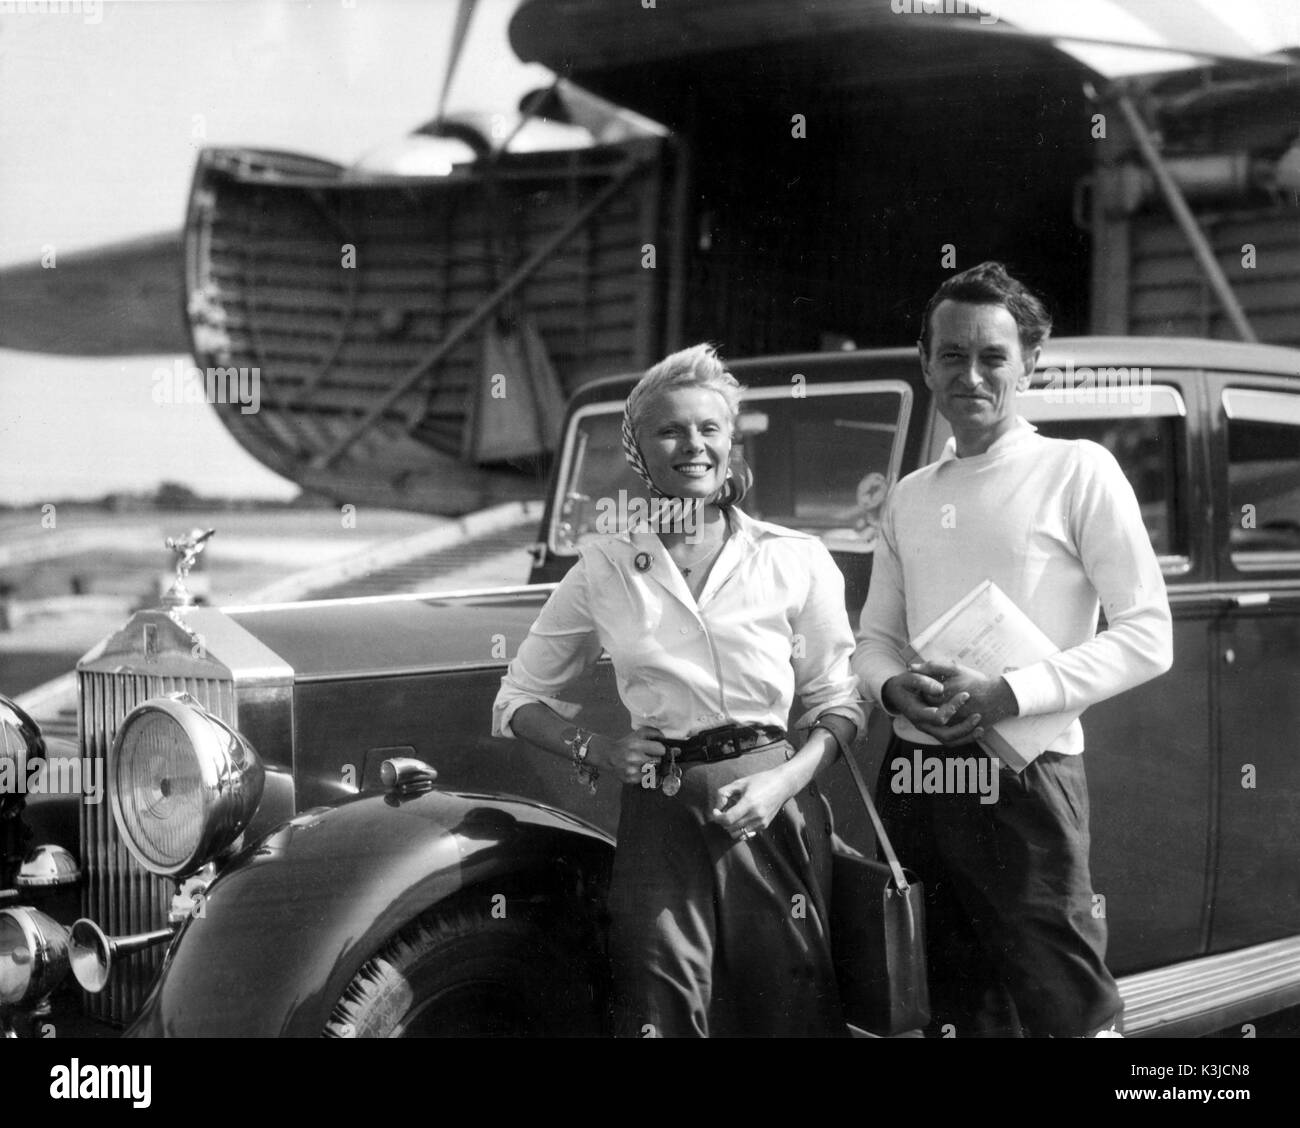 Réalisateur David Lean et son épouse l'actrice ANN TODD retour d'un petit air de vacances sur un ferry avec leur voiture Rolls-Royce. Banque D'Images